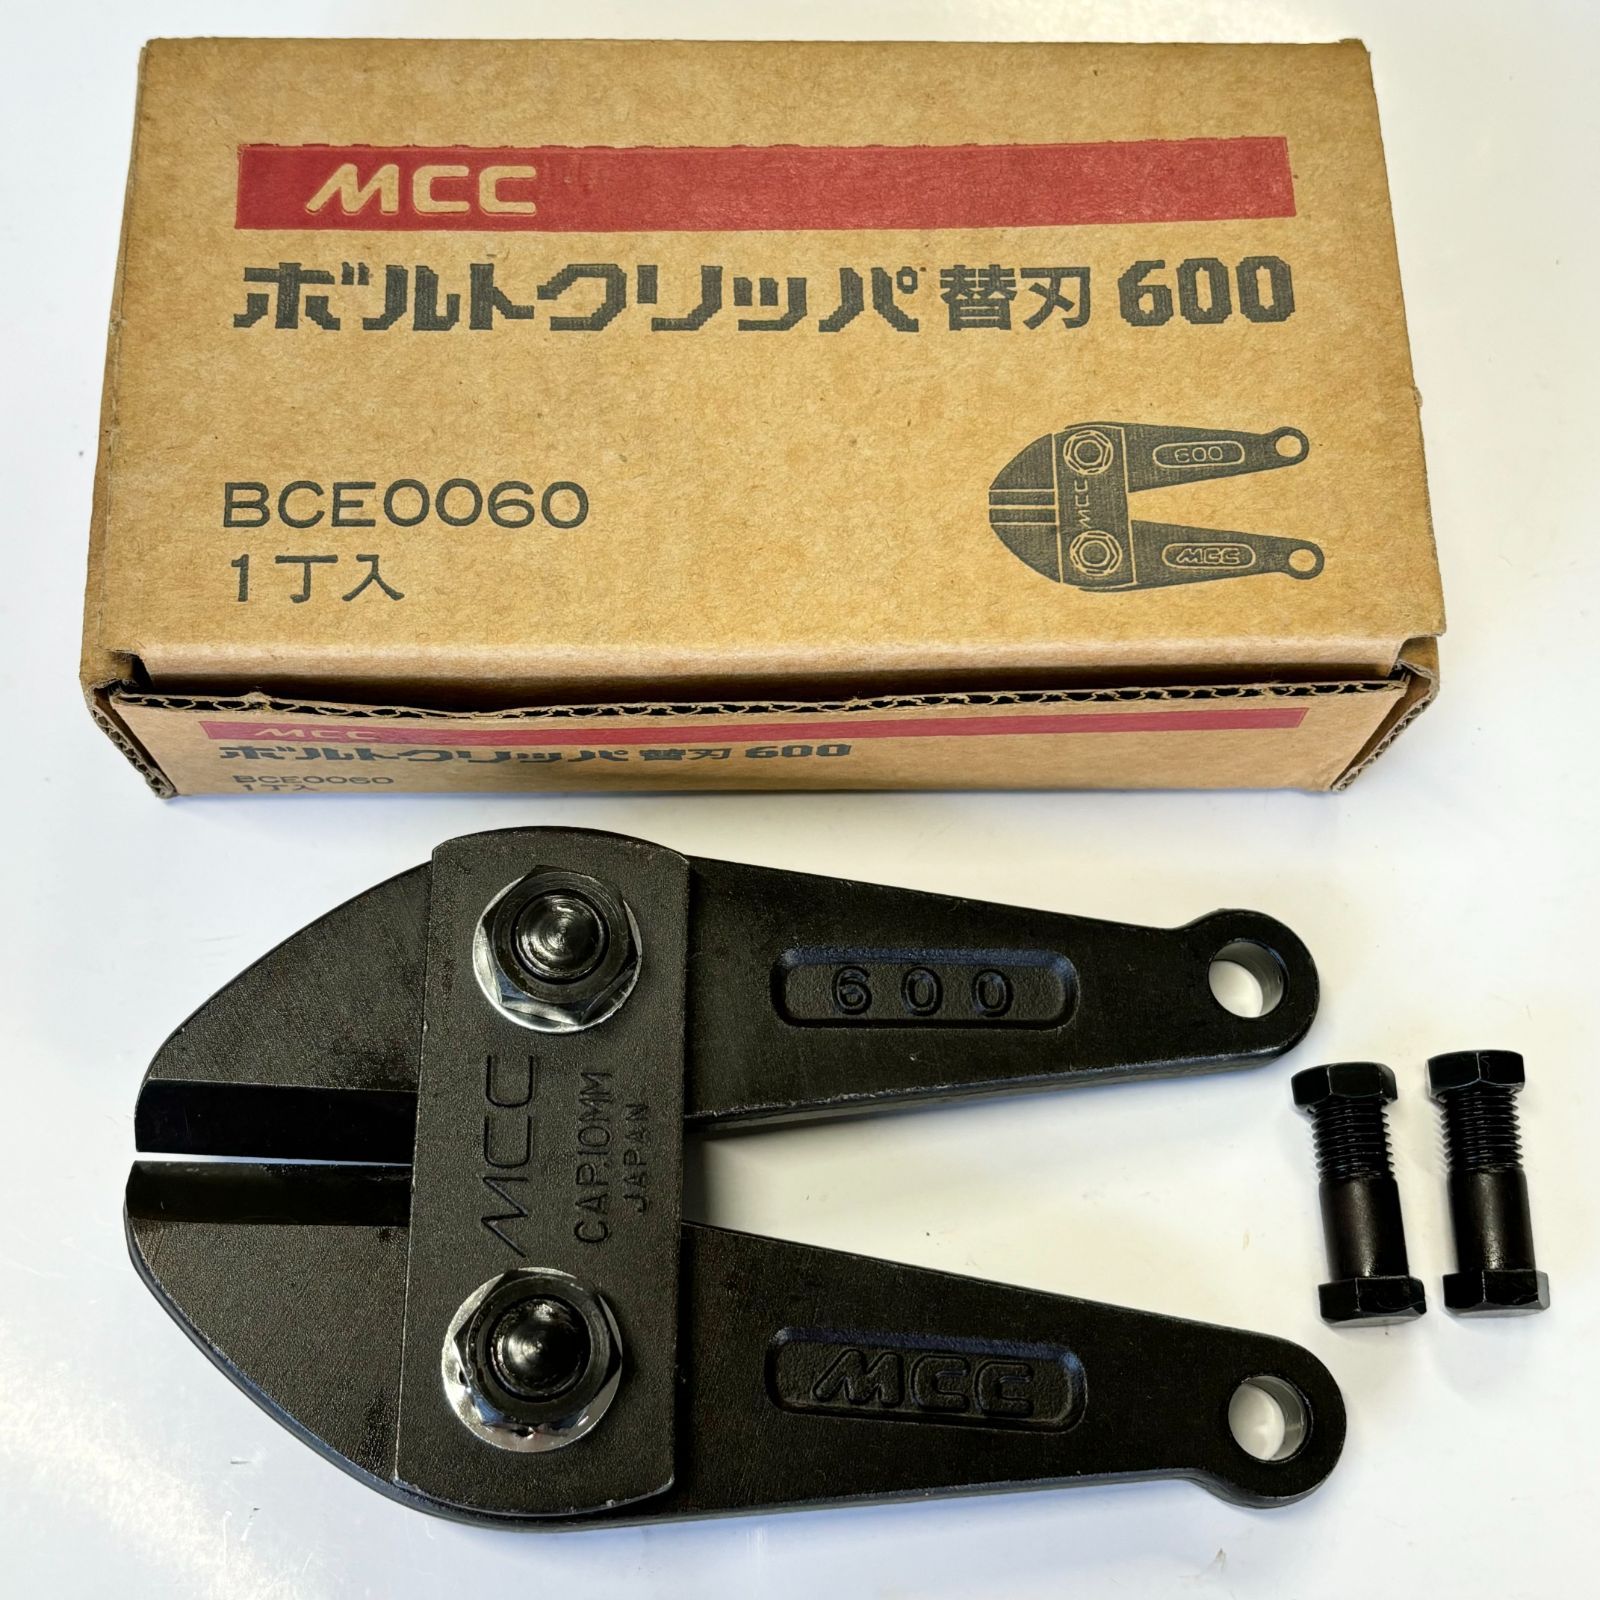 MCC ボルトクリッパー 替刃 600 BCE0060 ボルトカッター/切断工具